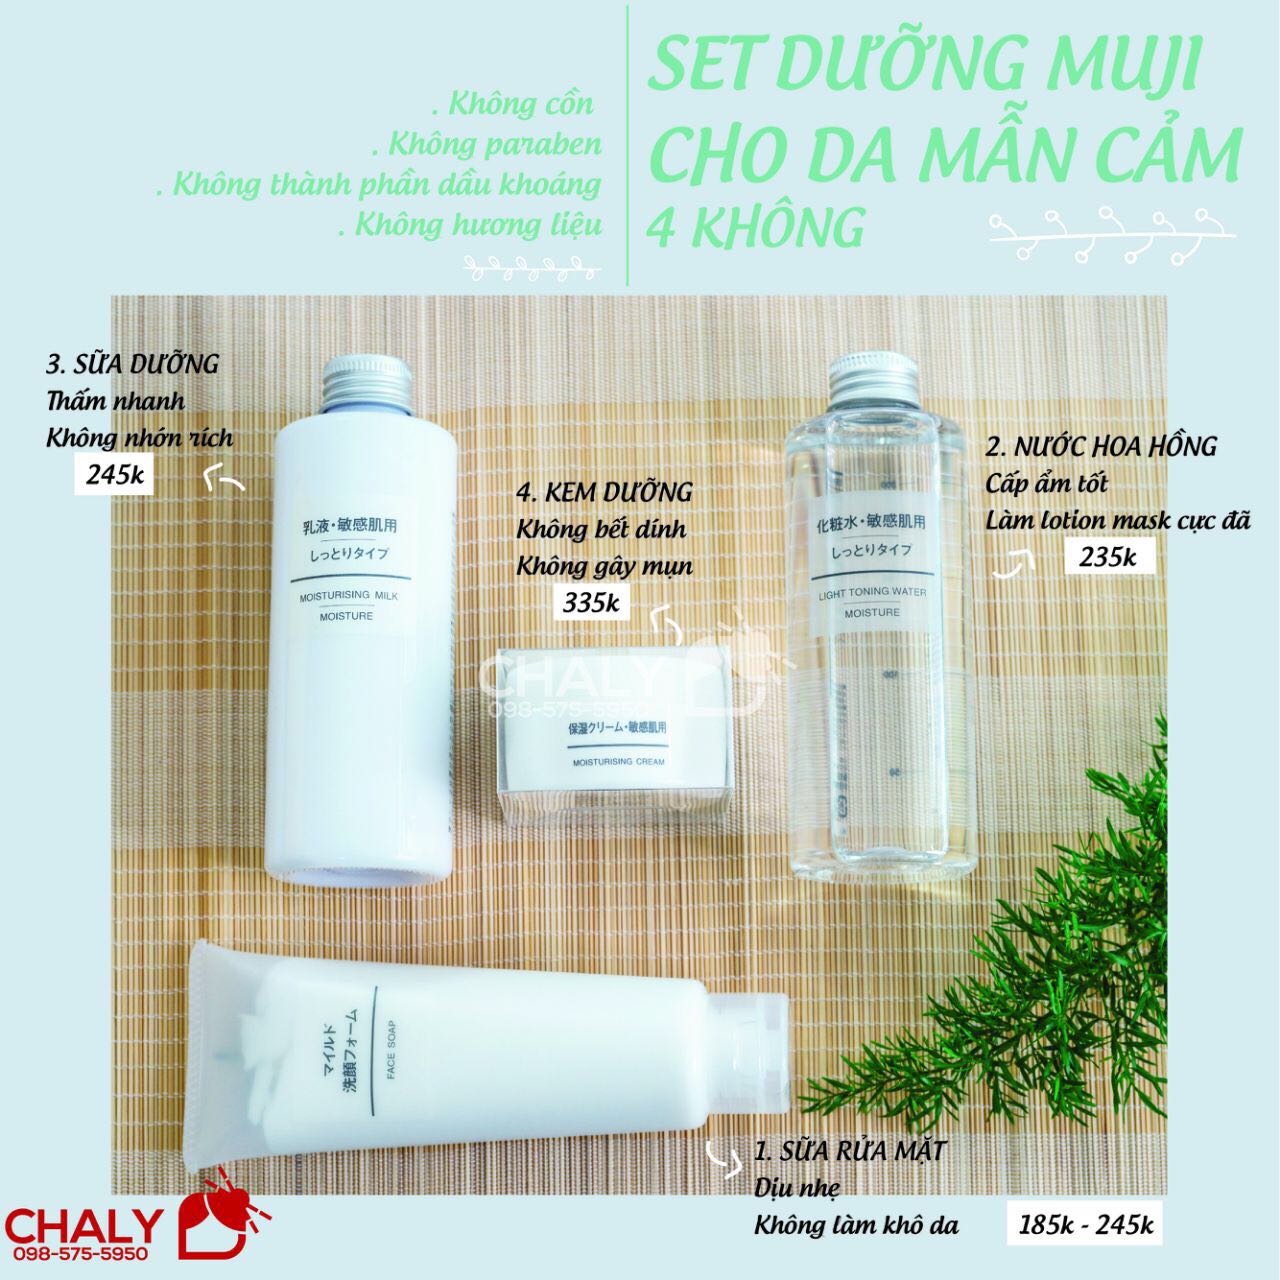 Set 4 sản phẩm dưỡng da nhạy cảm Muji từ nước hoa hồng, sữa rửa mặt, toner tới kem dưỡng ẩm